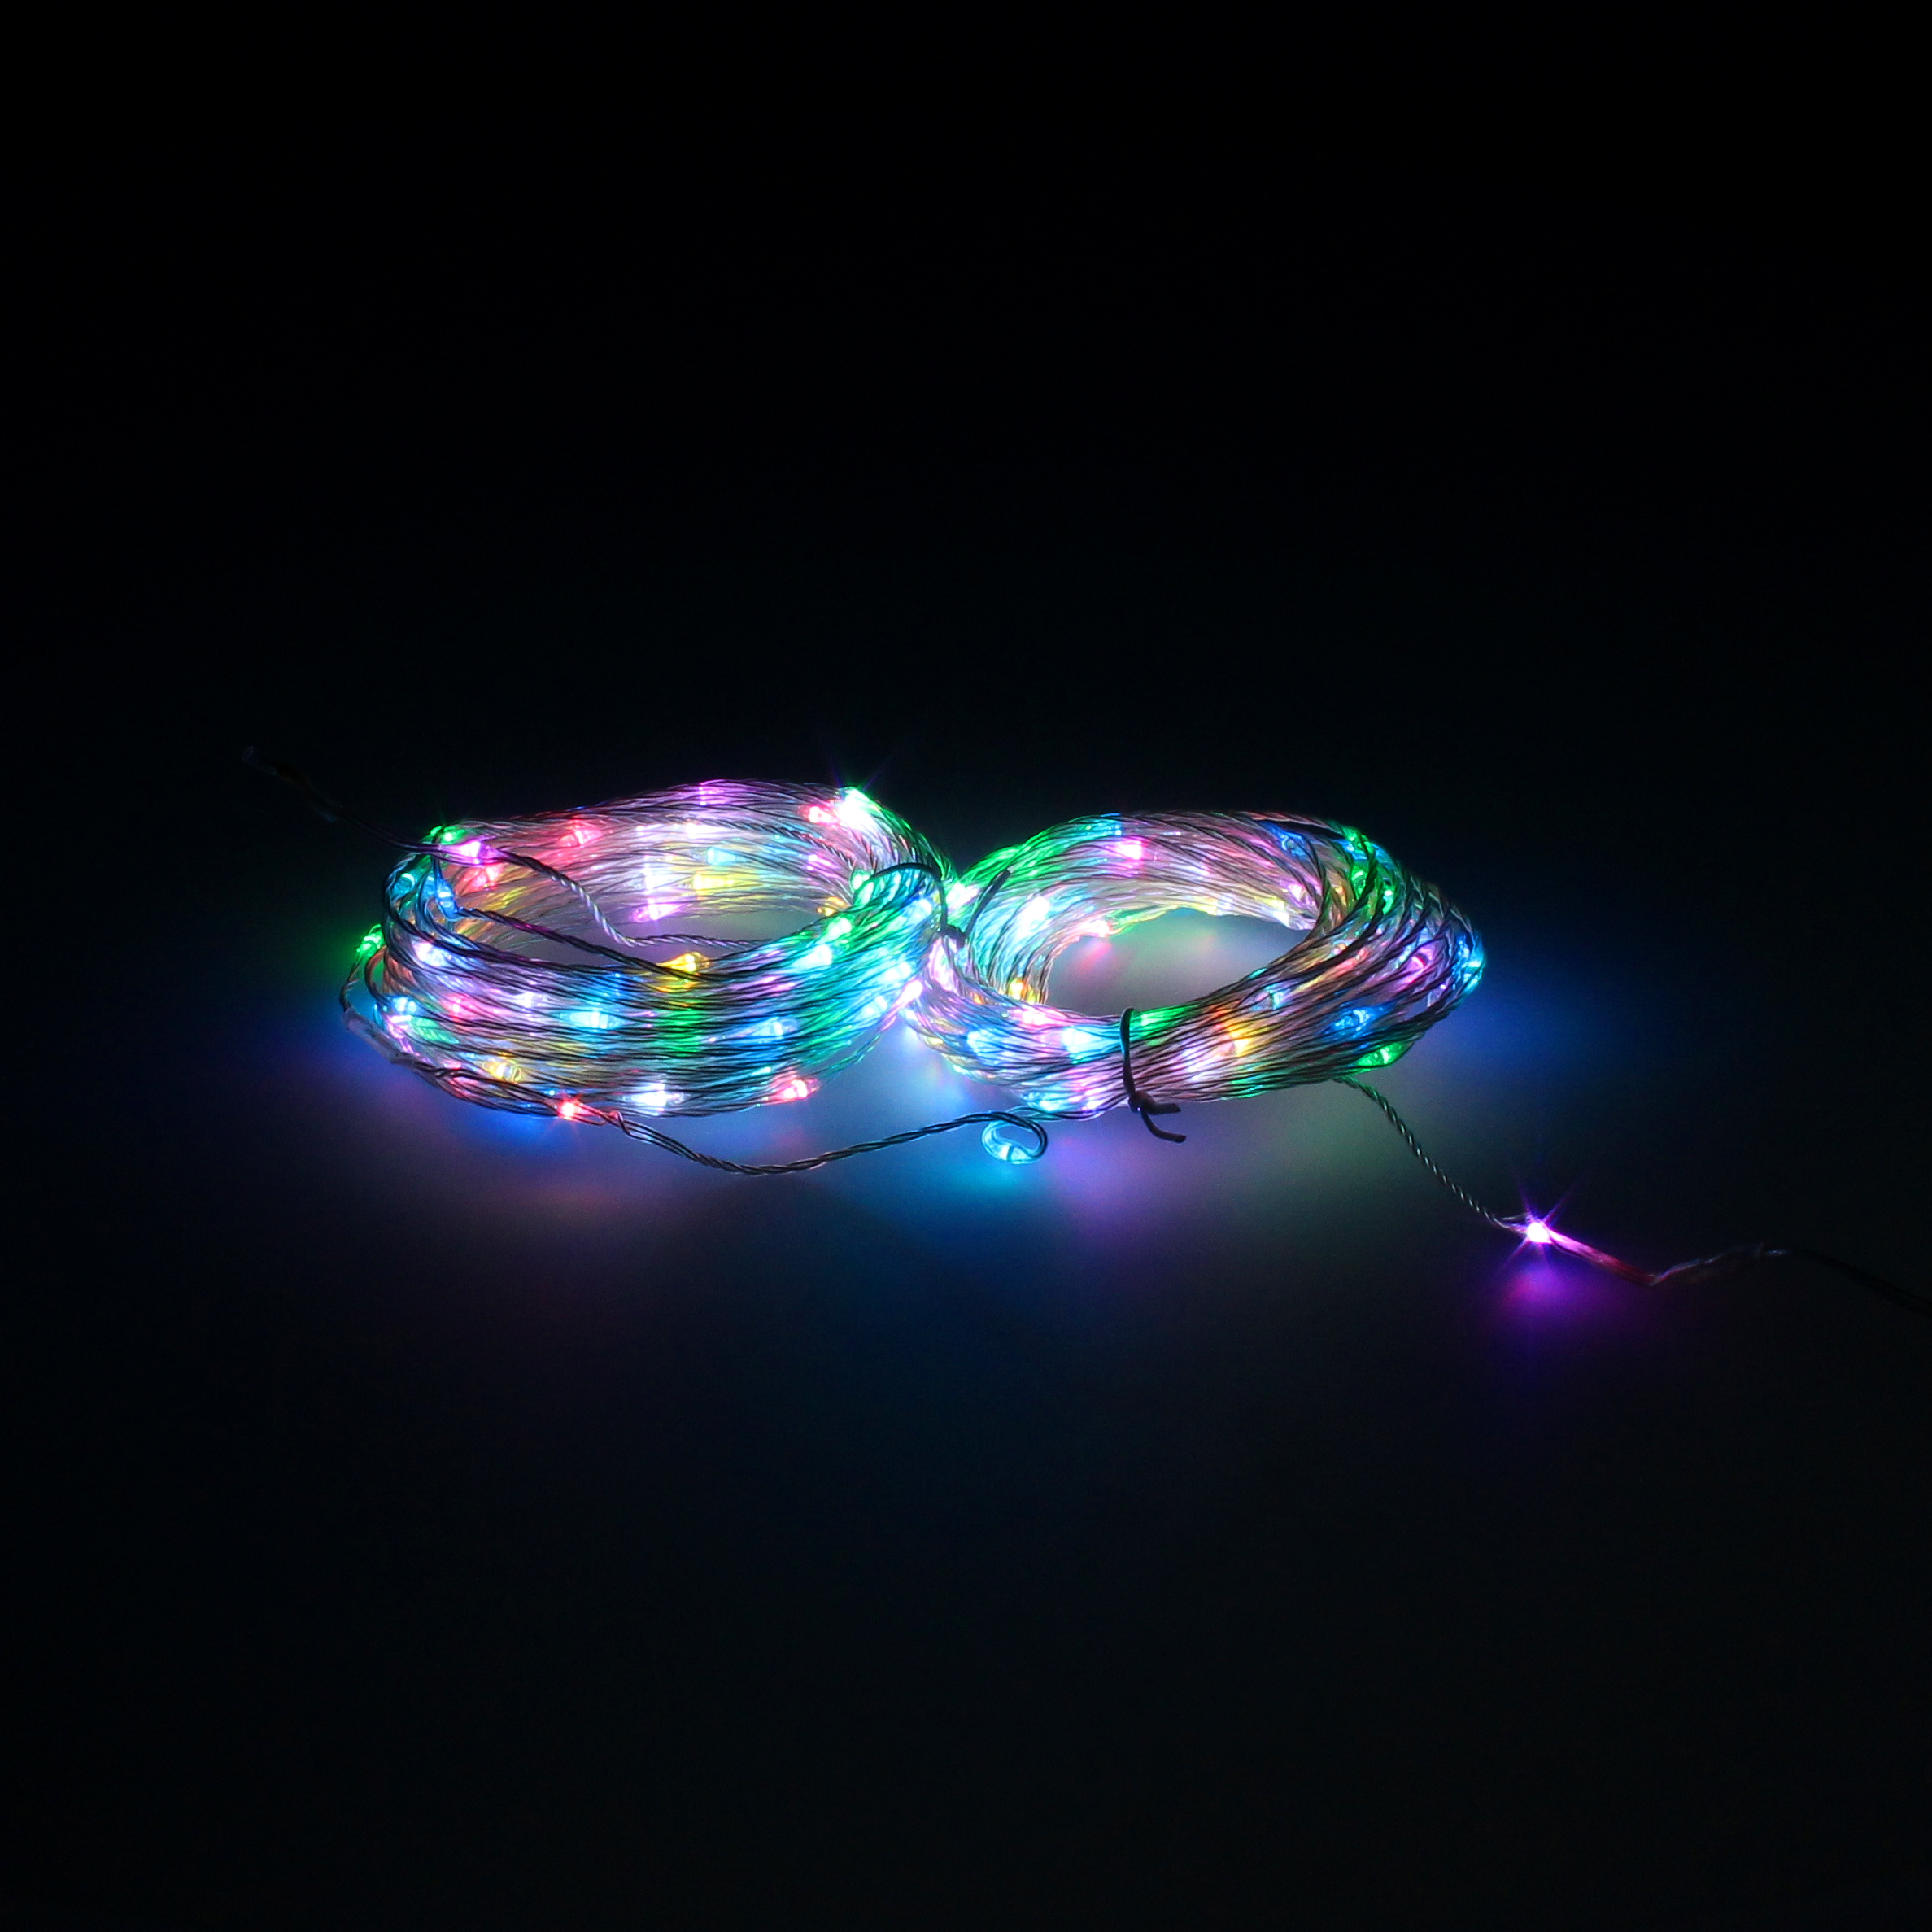 Luz Navidad LED Multicolor: 200 Leds, 23m, para árboles de 120/150 cm. Transformador con funciones y colores. ¡Decora con magia navideña!